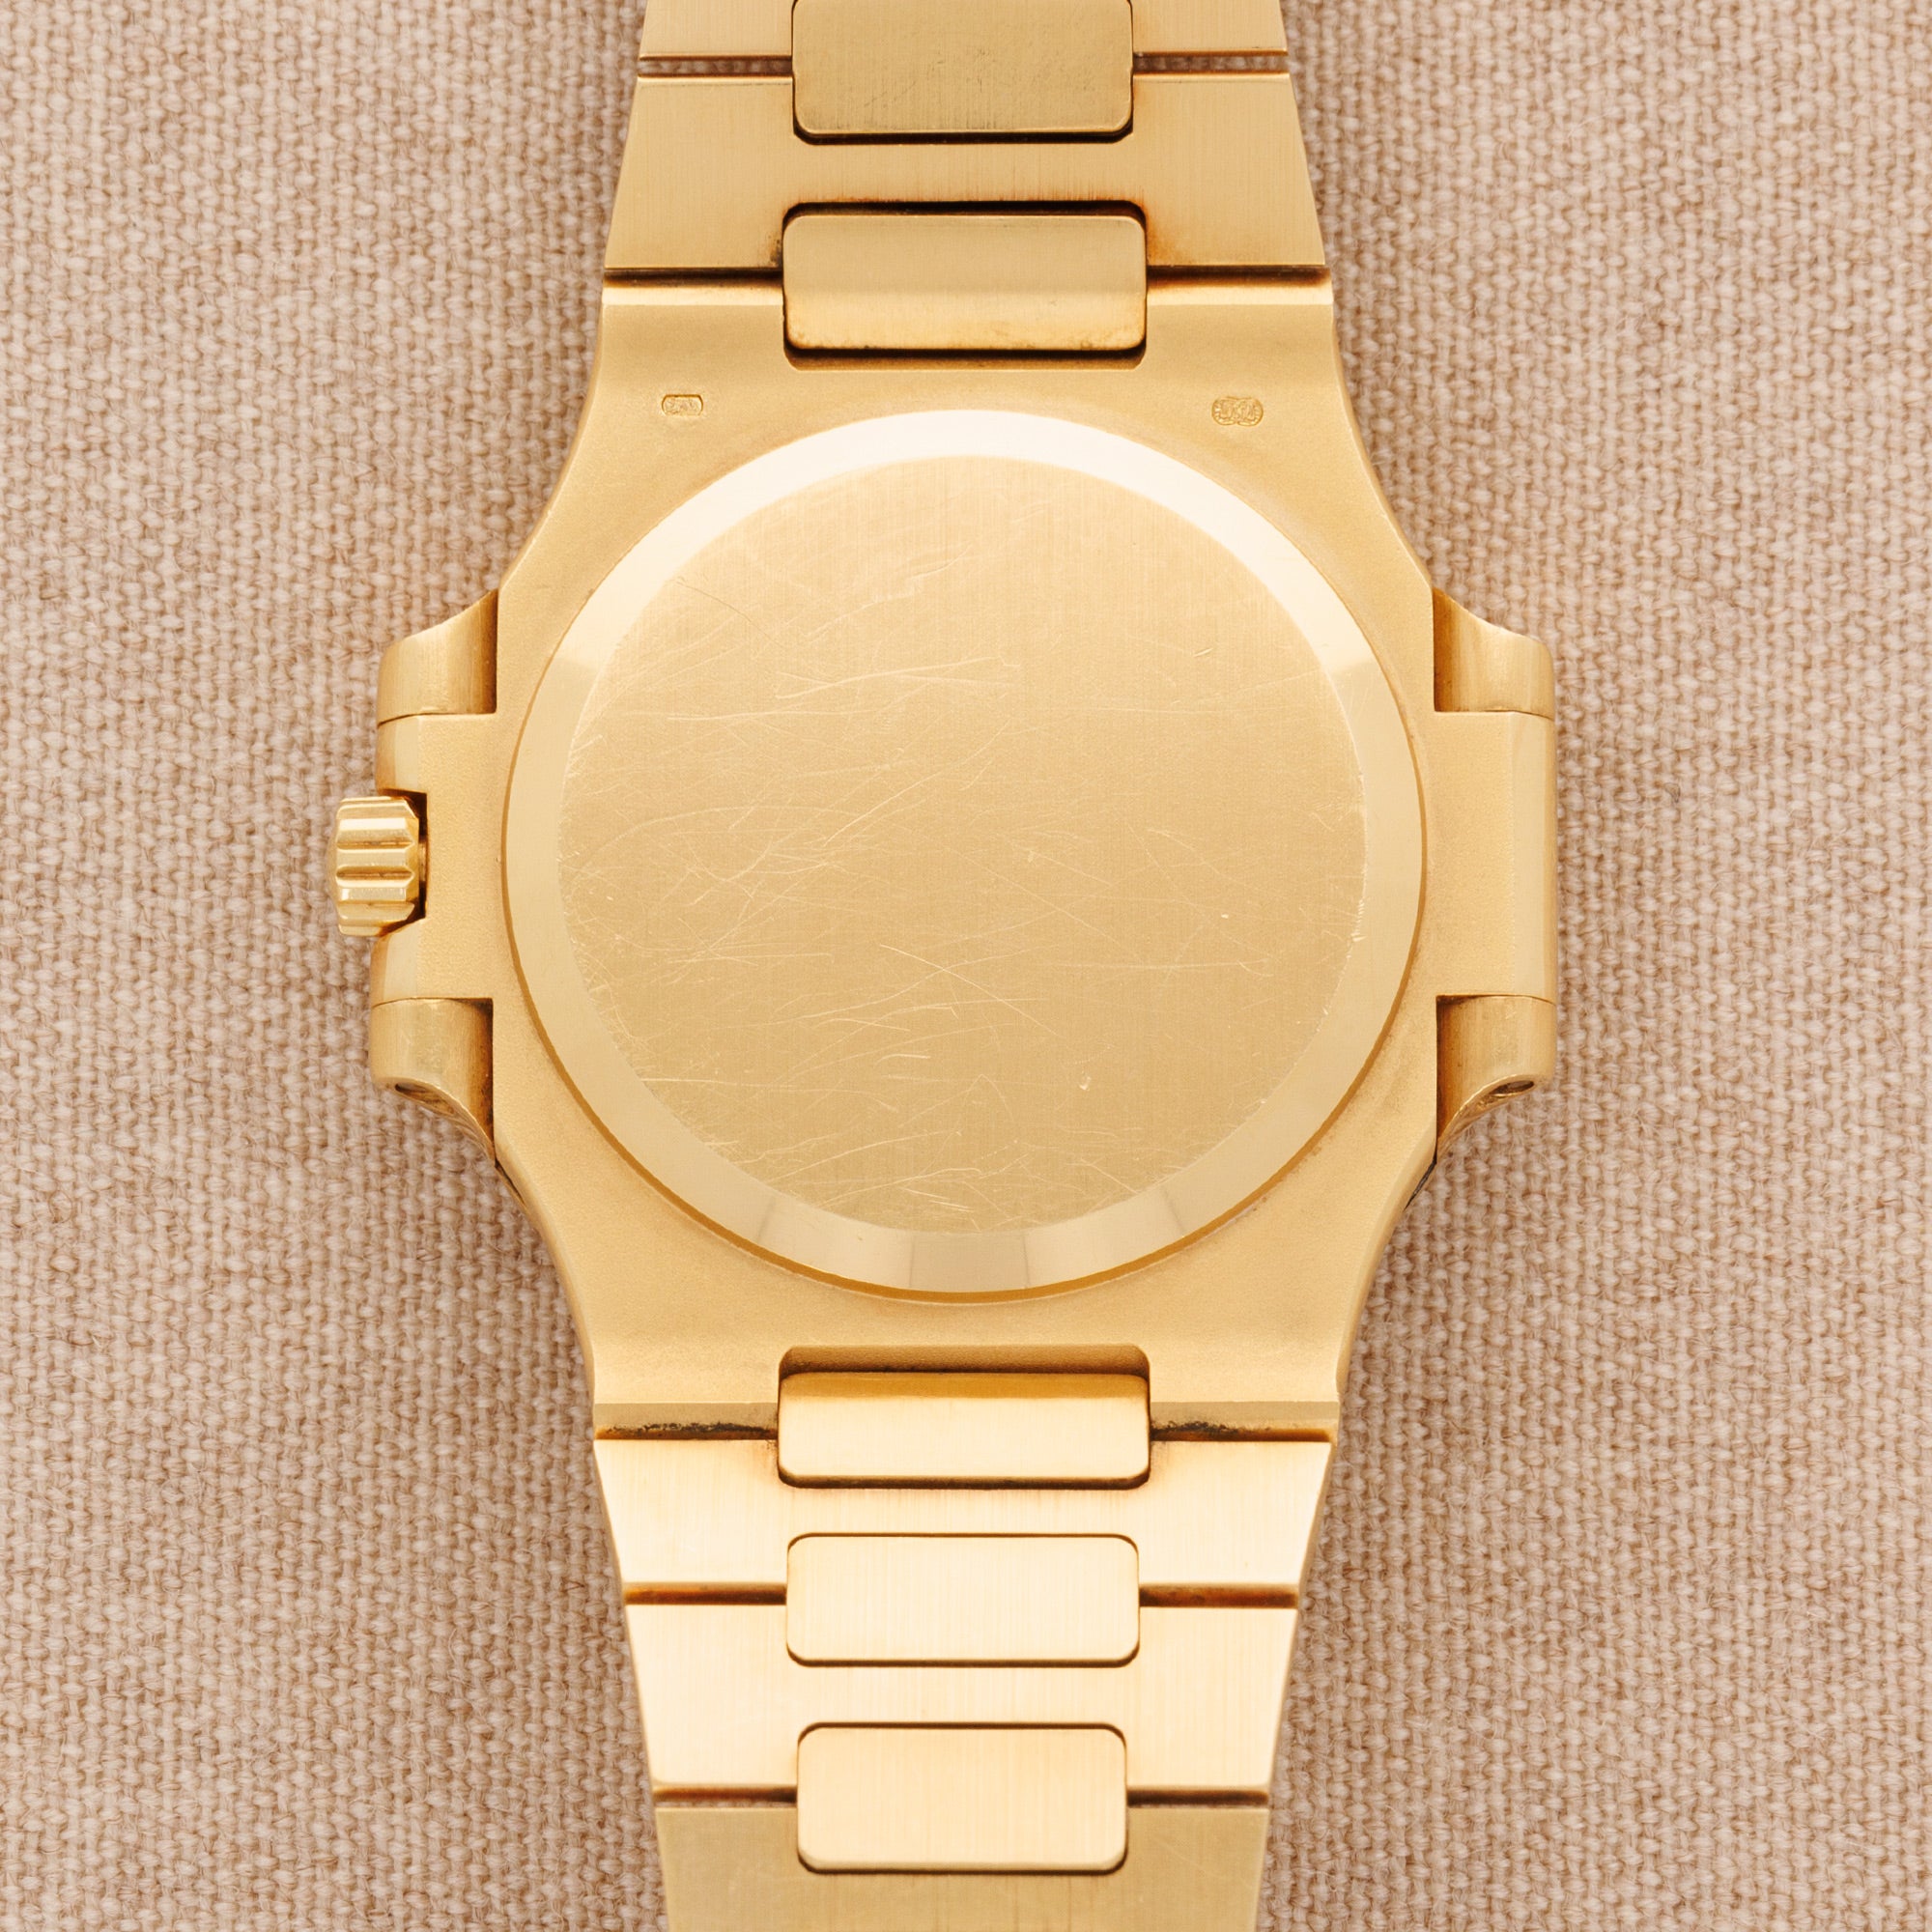 Patek Philippe - Patek Philippe Yellow Gold Nautilus Watch Ref. 3800/103 - The Keystone Watches